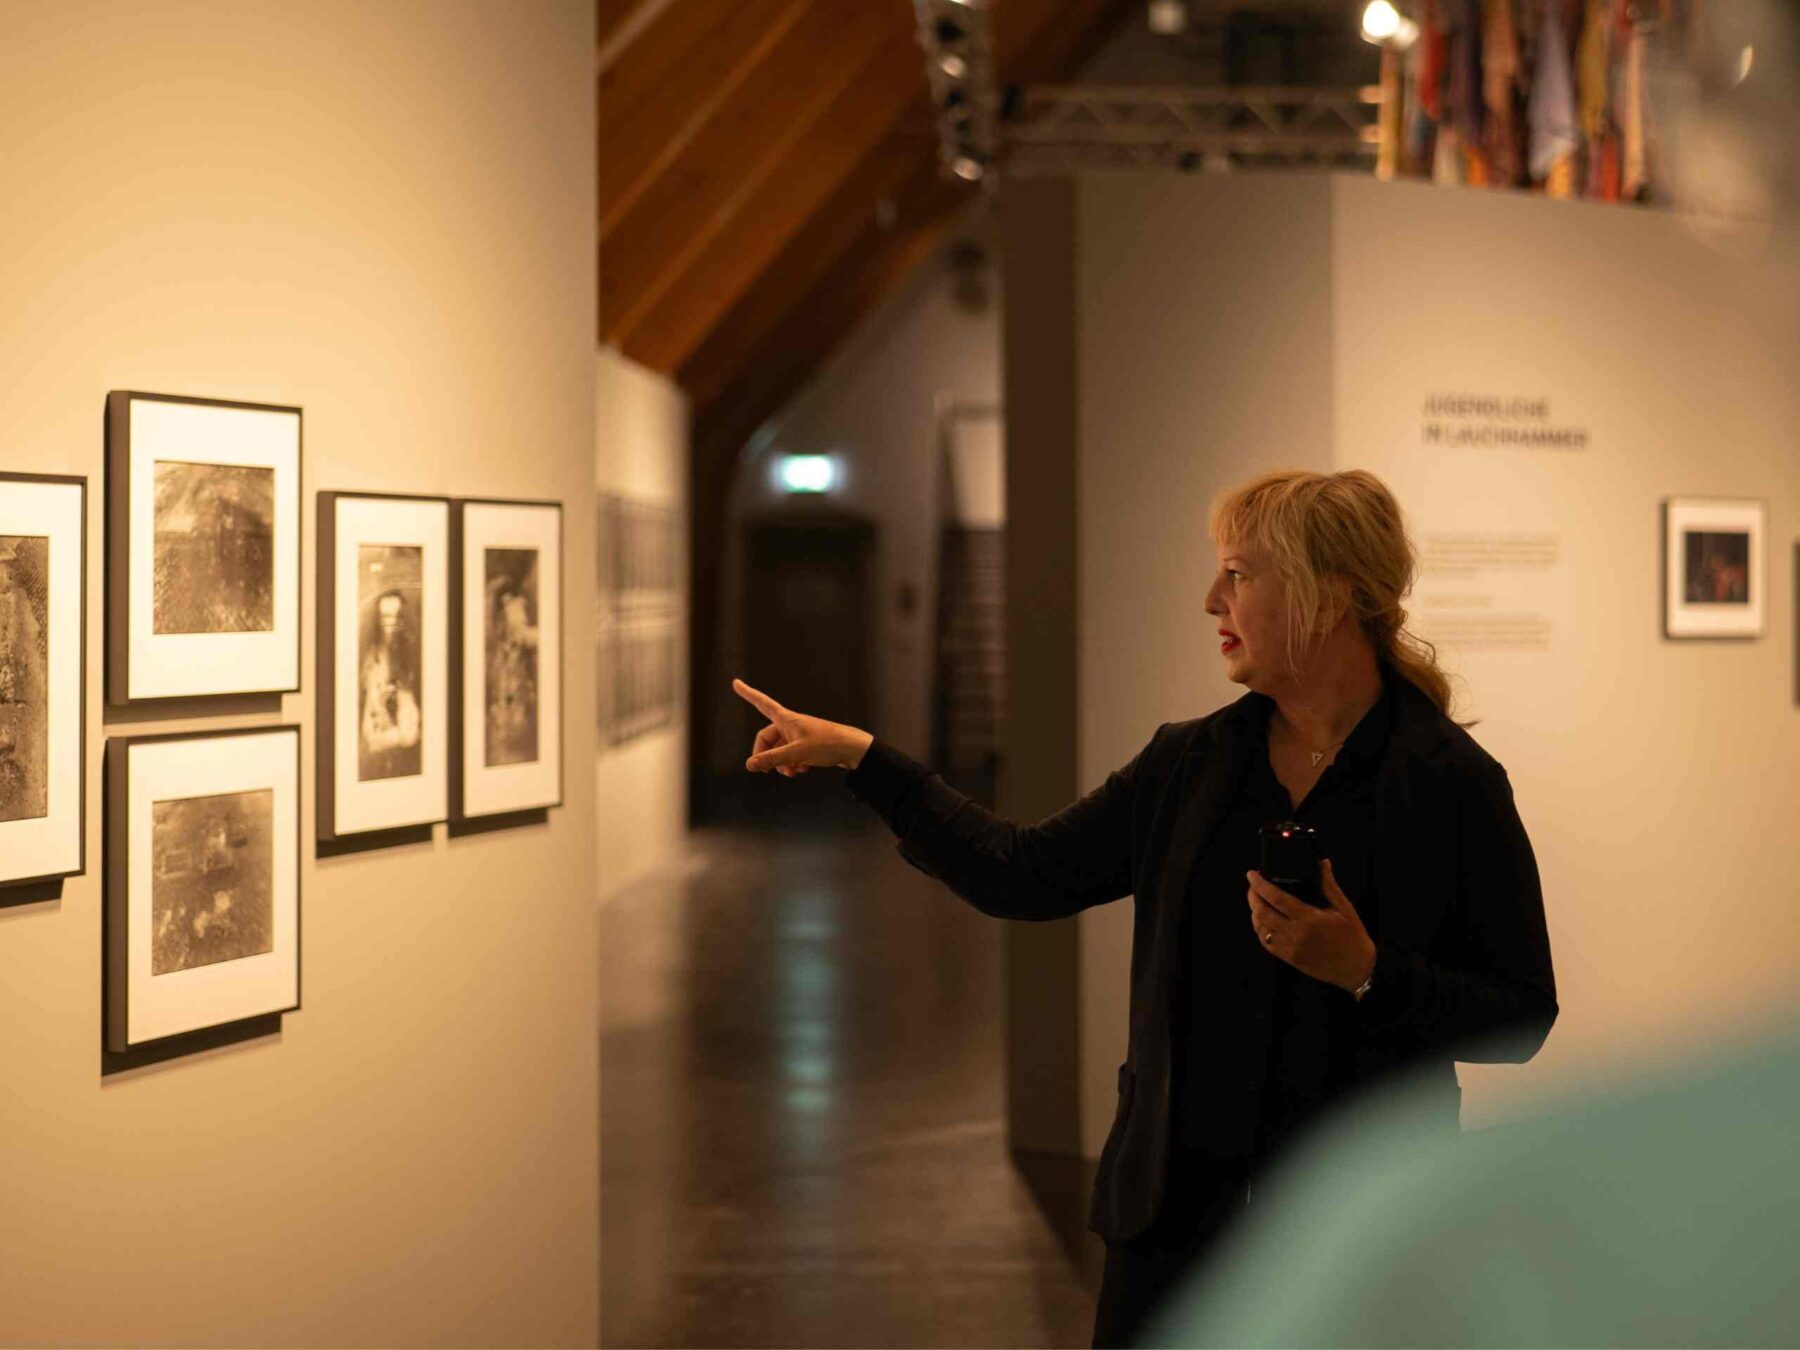 Führung in der Ausstellung, dunkel gekleidete Frau zeigt auf Bilder